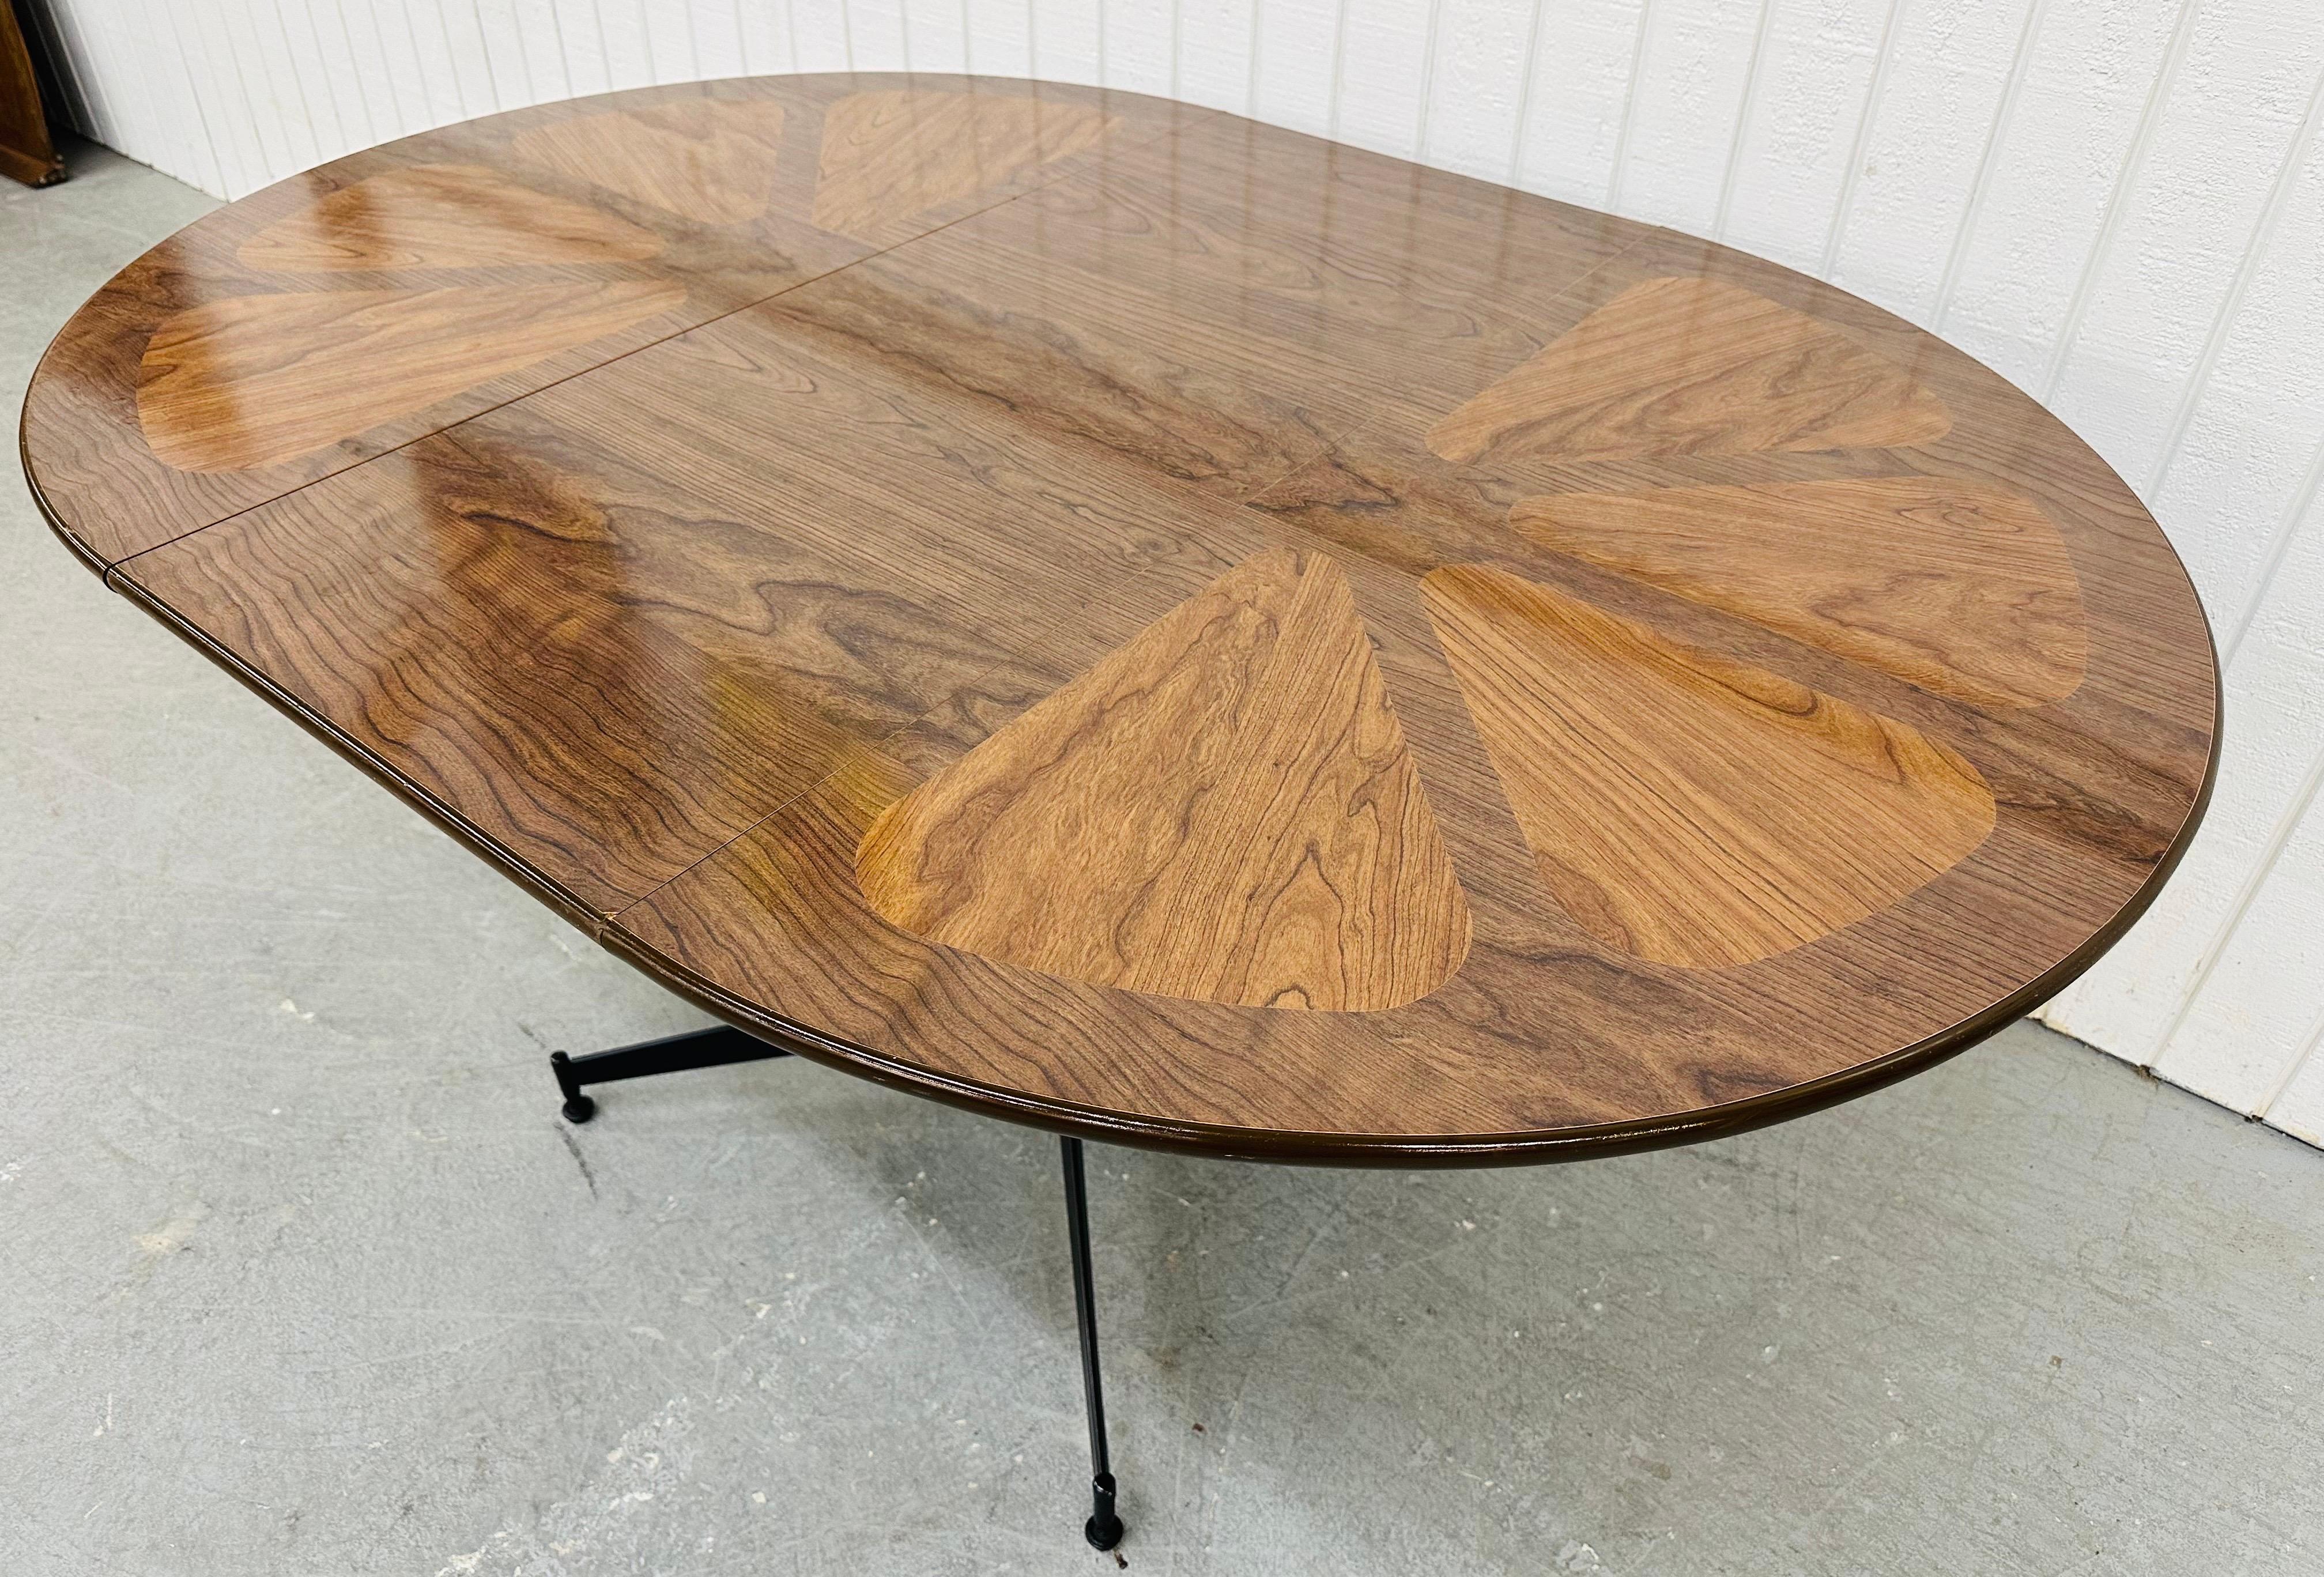 Diese Auflistung ist für eine Mid-Century Modern Brody Walnuss Esstisch-Set. Ausgestattet mit einem runden Tisch aus laminiertem Nussbaumholz, der mit einer Platte auf 59